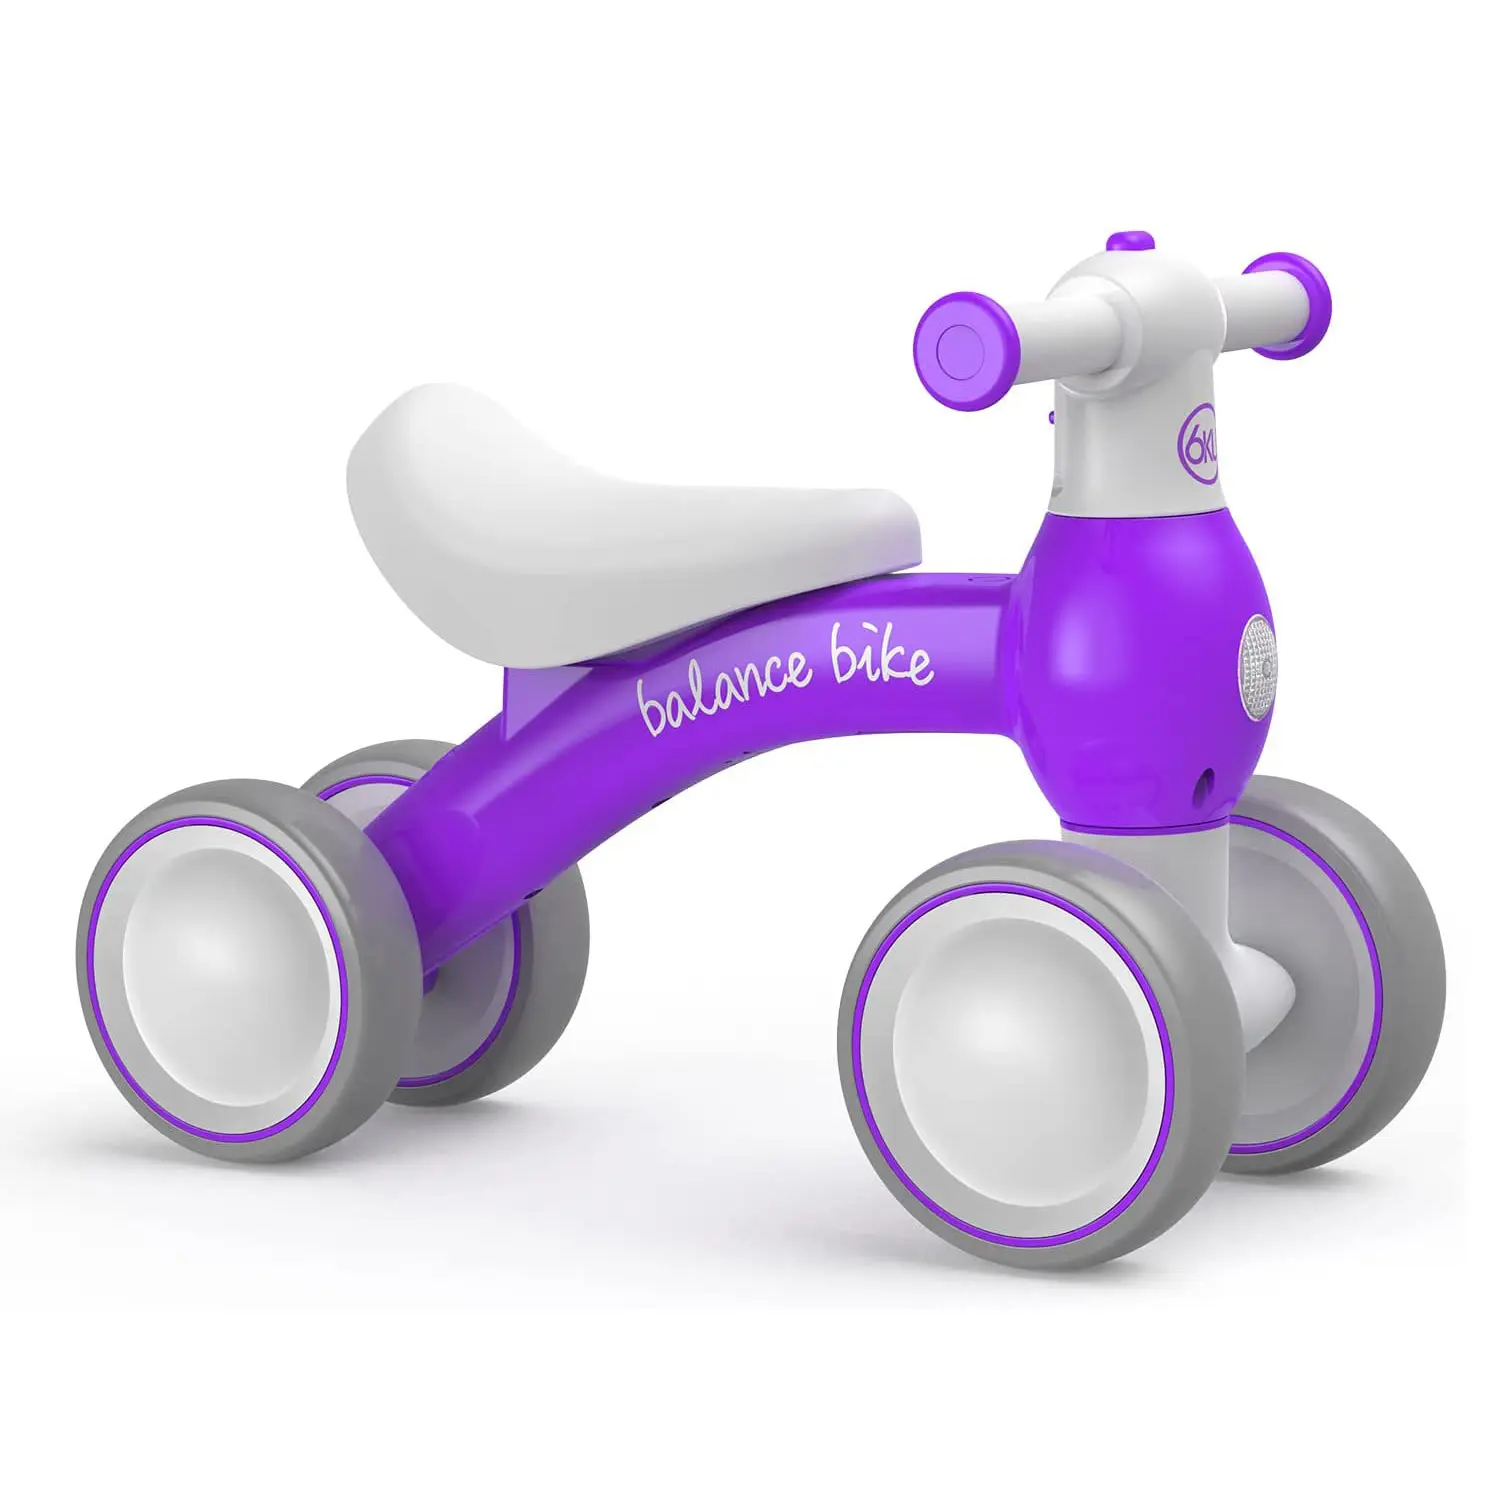 Bicicleta de equilibrio para bebé de 1 año, juguetes para niños y niñas, regalo para bebé, bicicleta de equilibrio con asiento ajustable